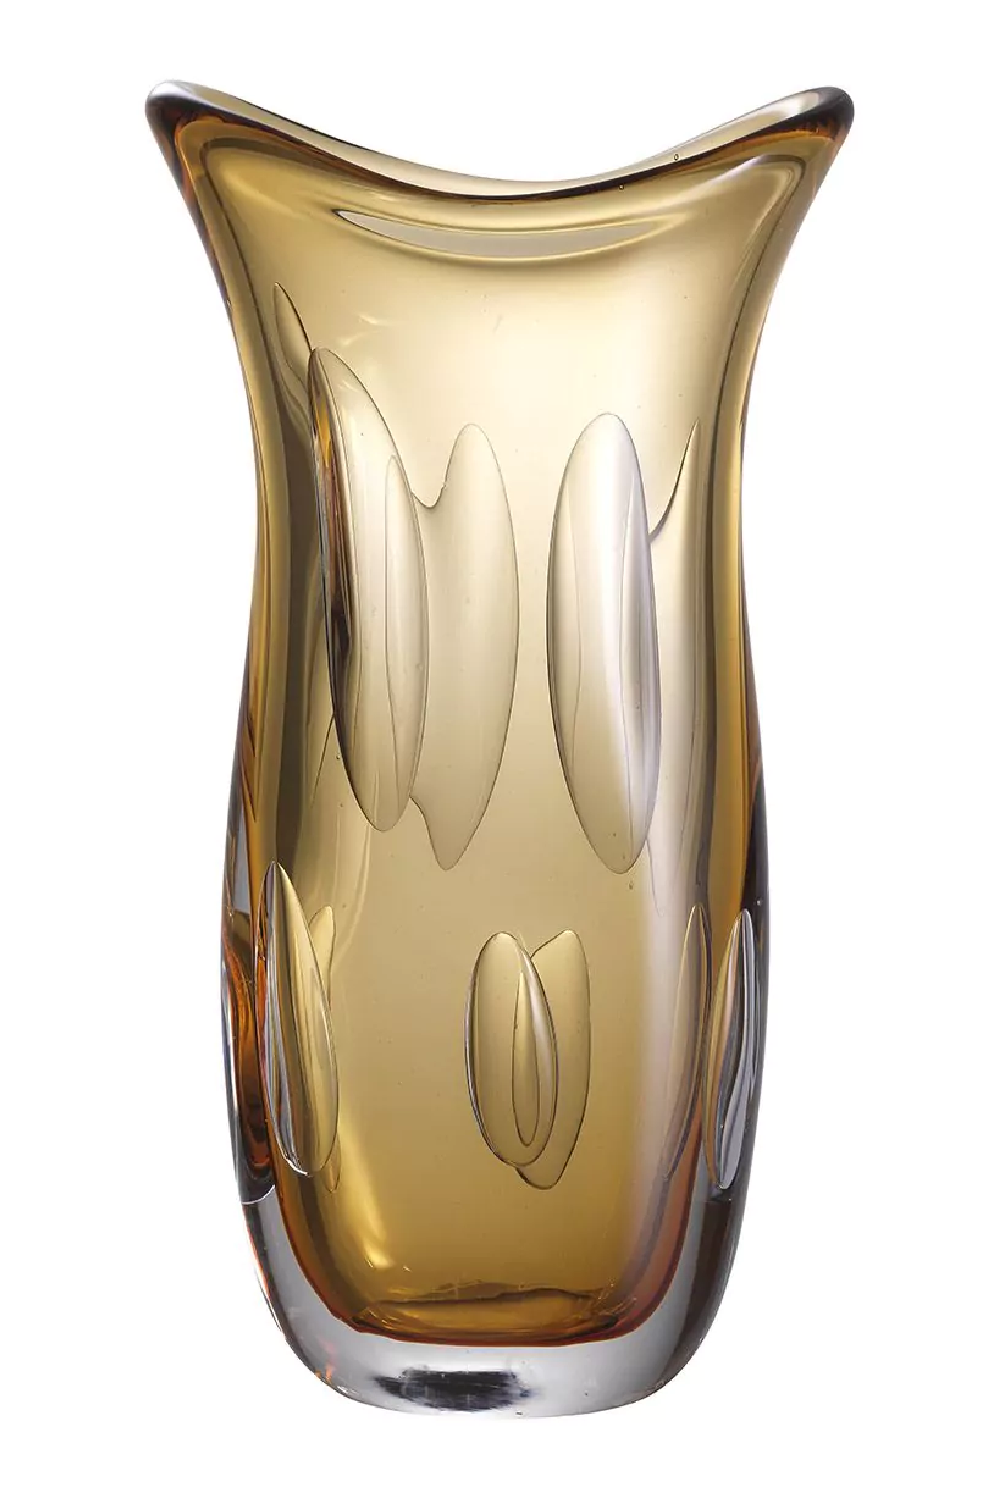 Orange Handblown Glass Vase | Eichholtz Matteo L | Oroa.com